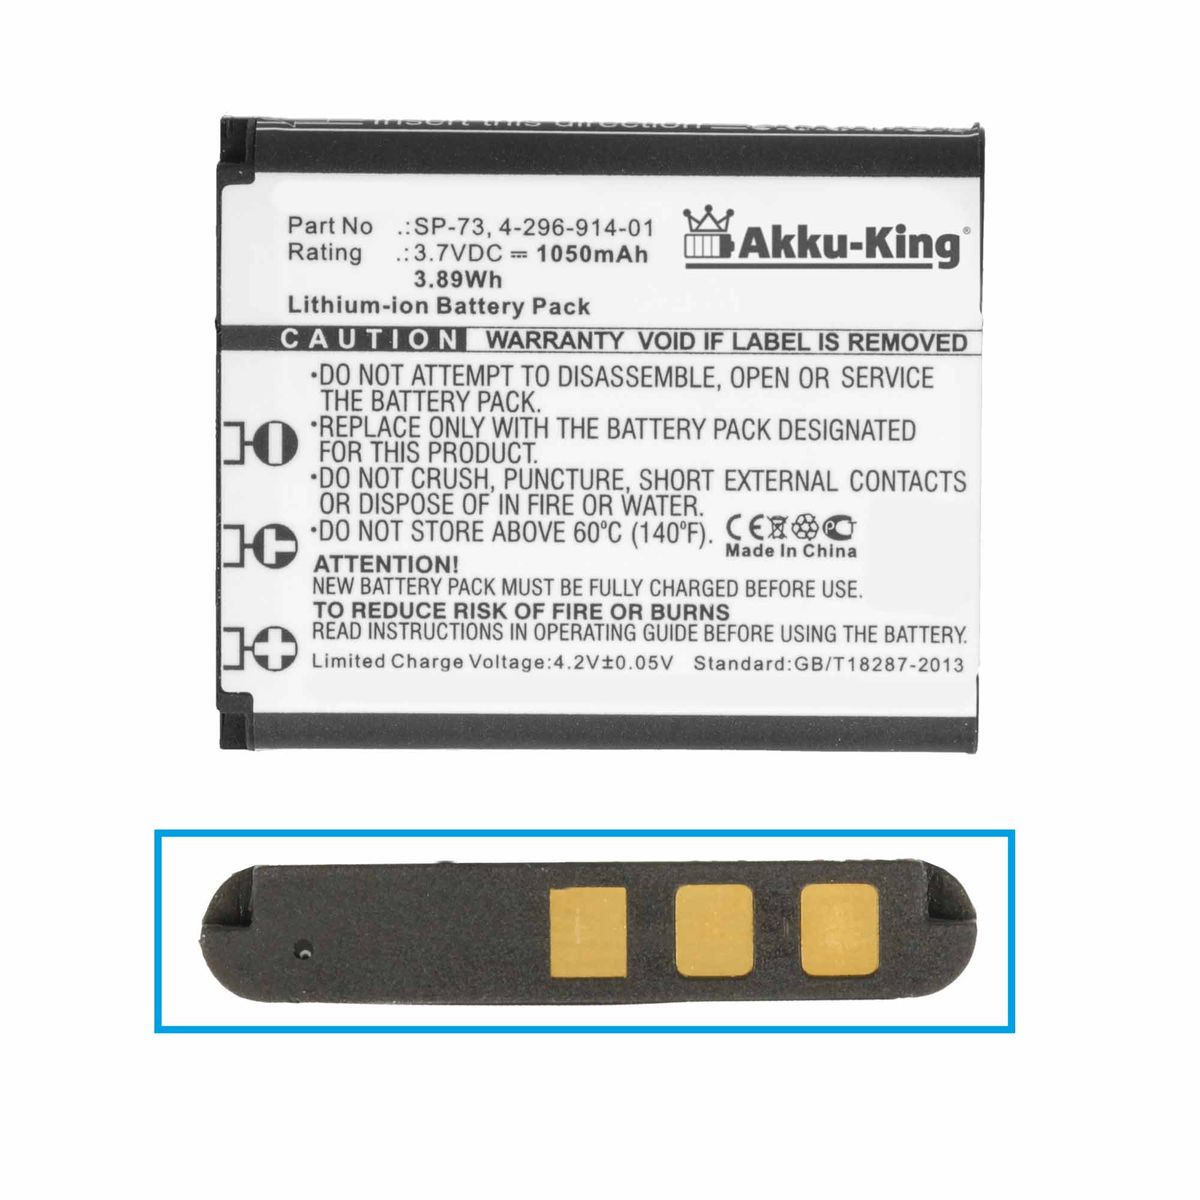 SP-73 Li-Ion Sony Geräte-Akku, kompatibel Akku 3.7 1050mAh AKKU-KING Volt, mit